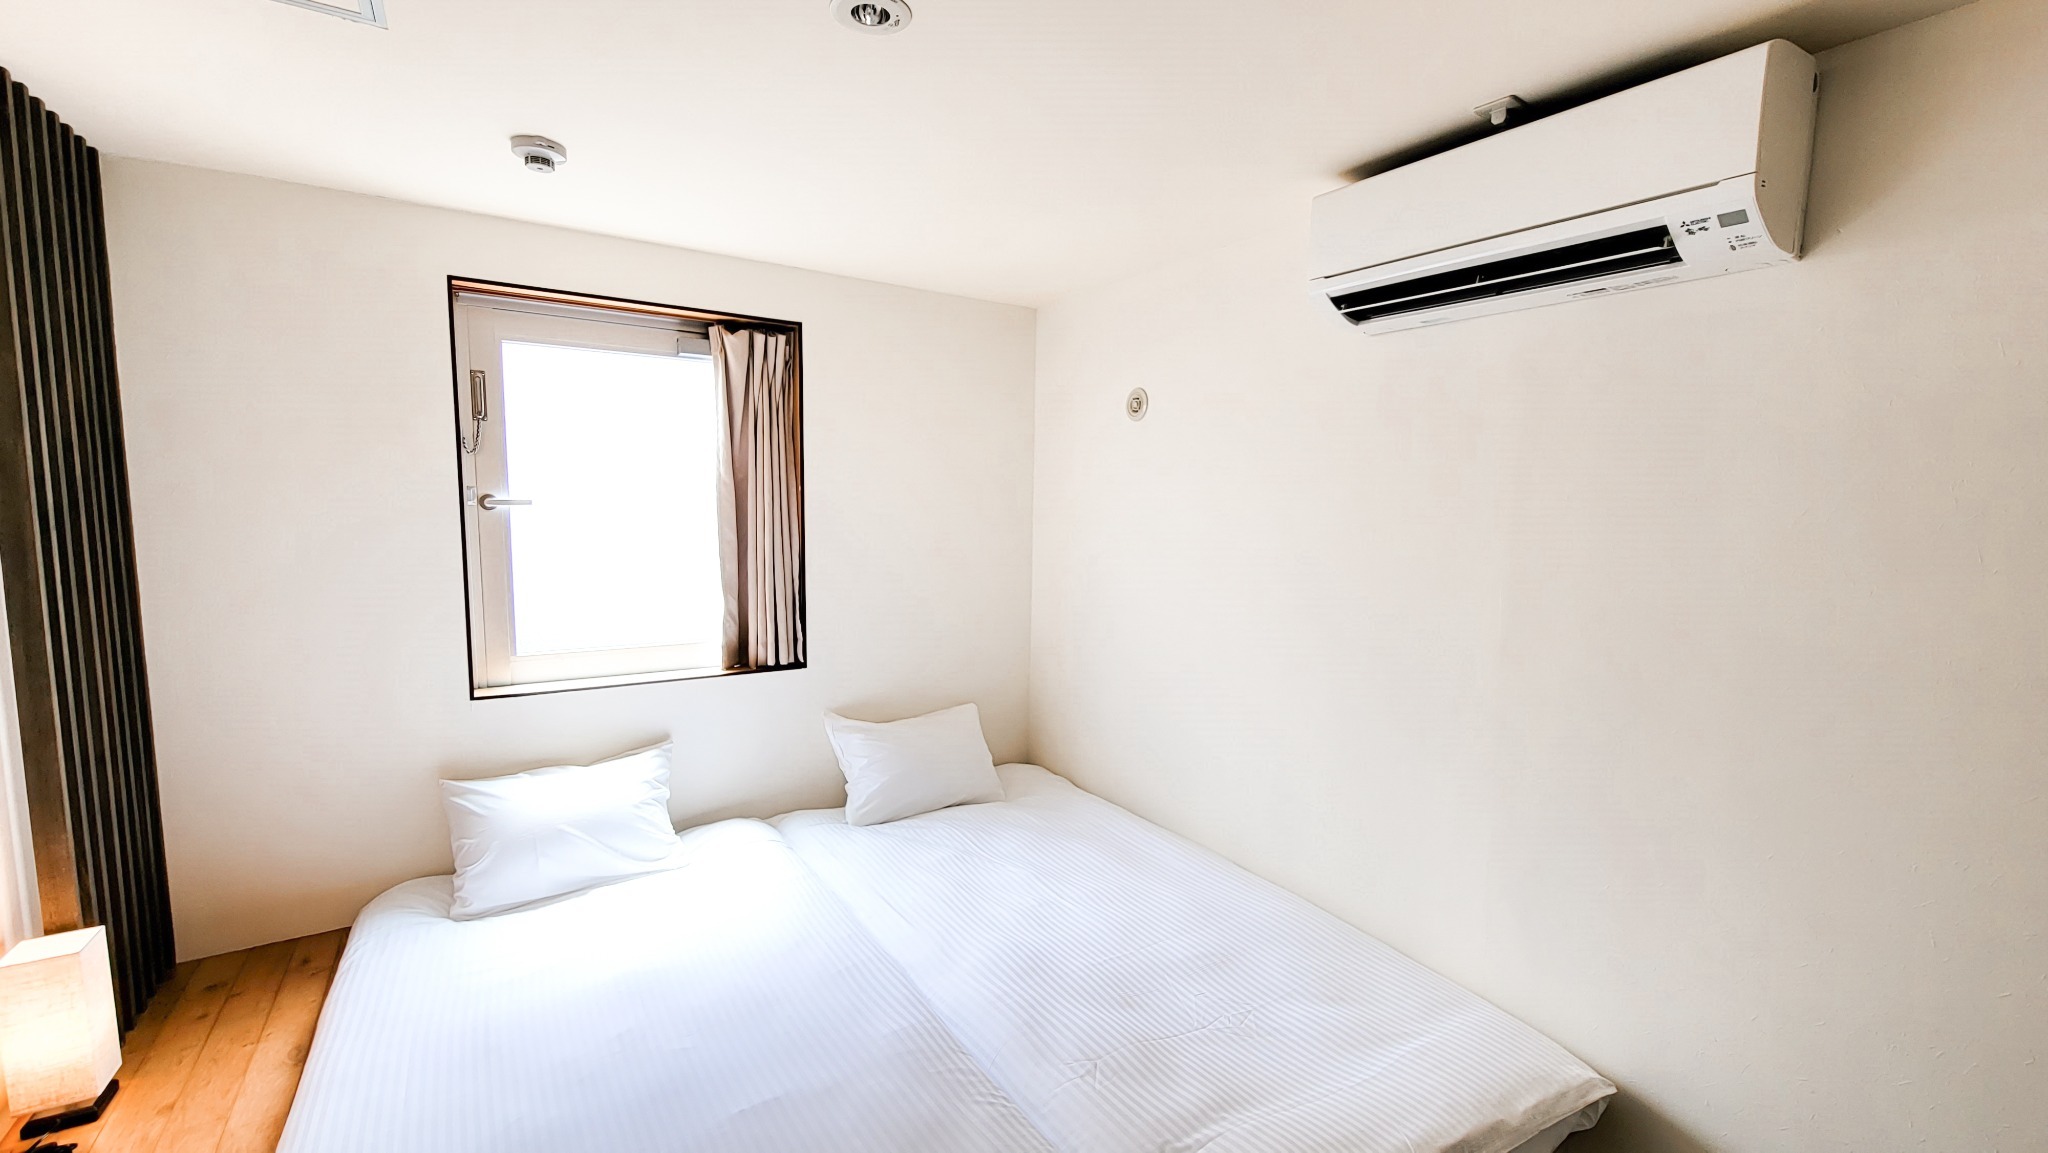 【1~2人部屋・素泊まり】日本の伝統とミニマリズムの調和。畳の宿泊で感じる平穏